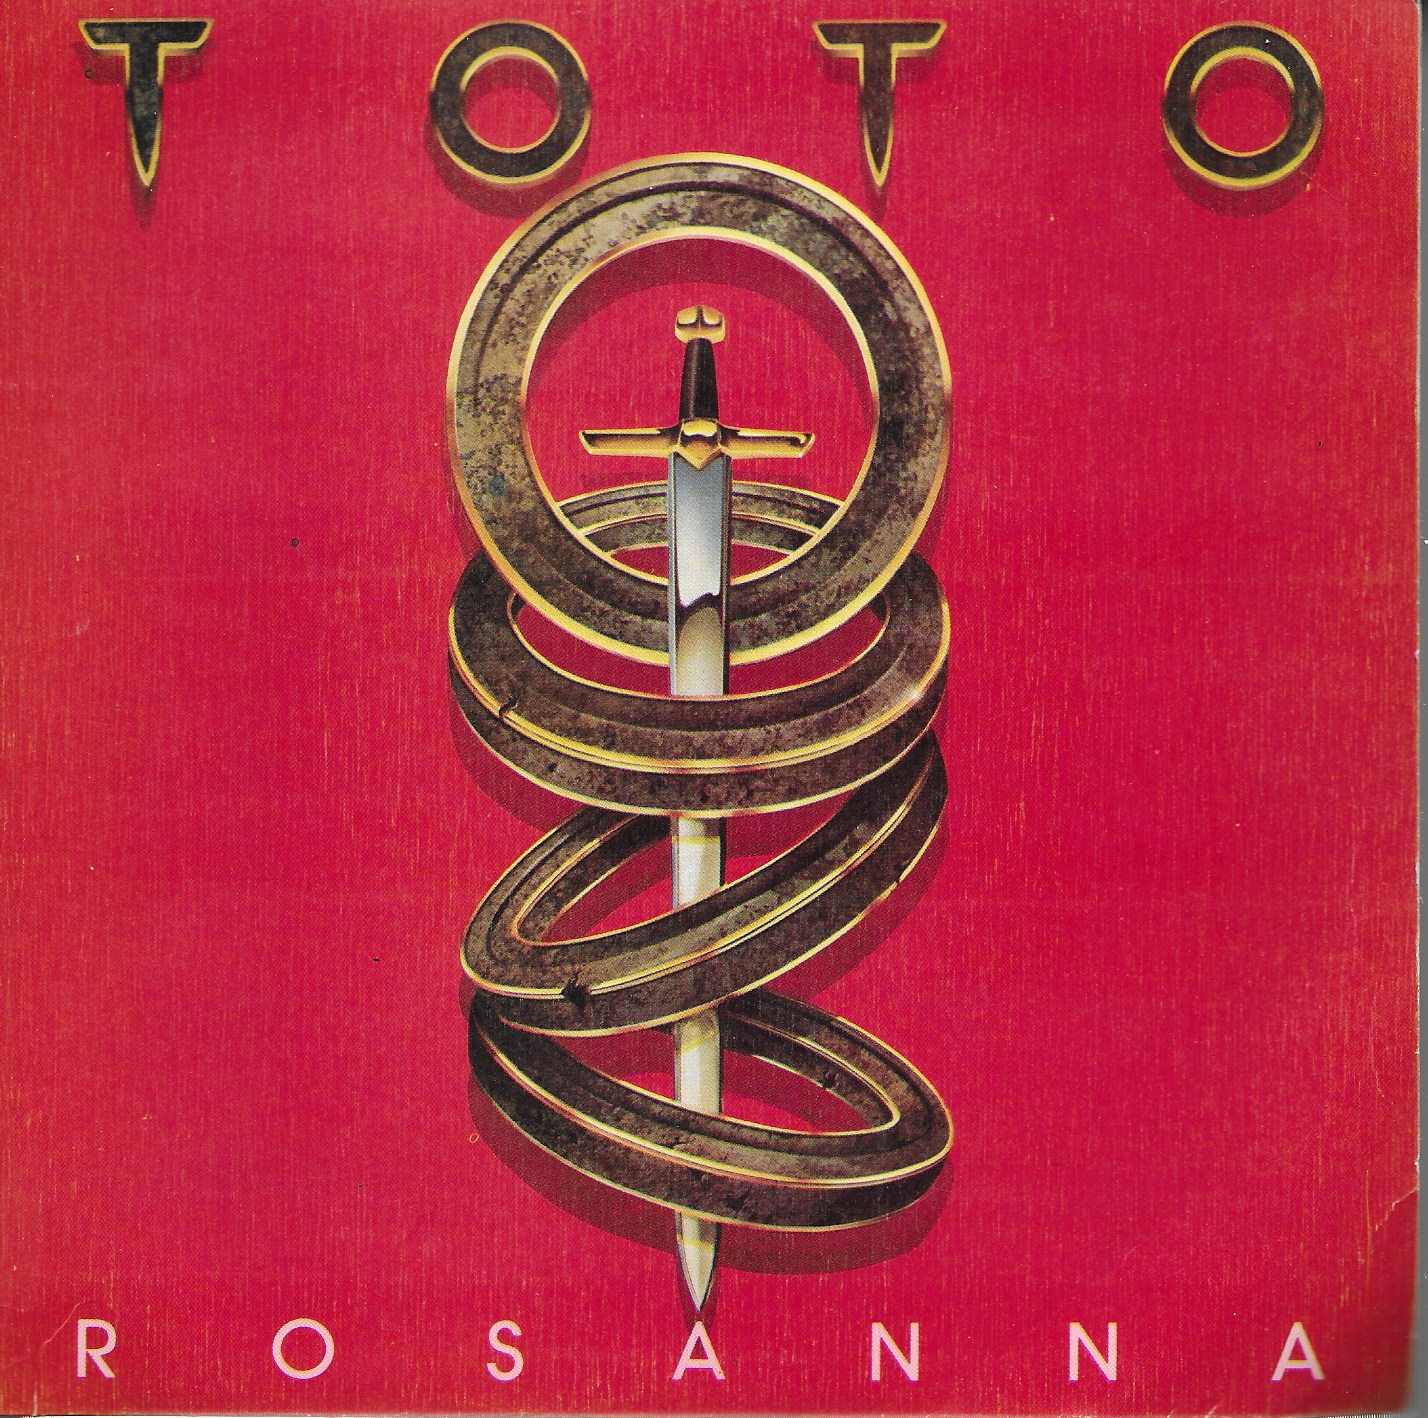 Rosanna. CBS 1982. Toto (Solo cubierta del single)